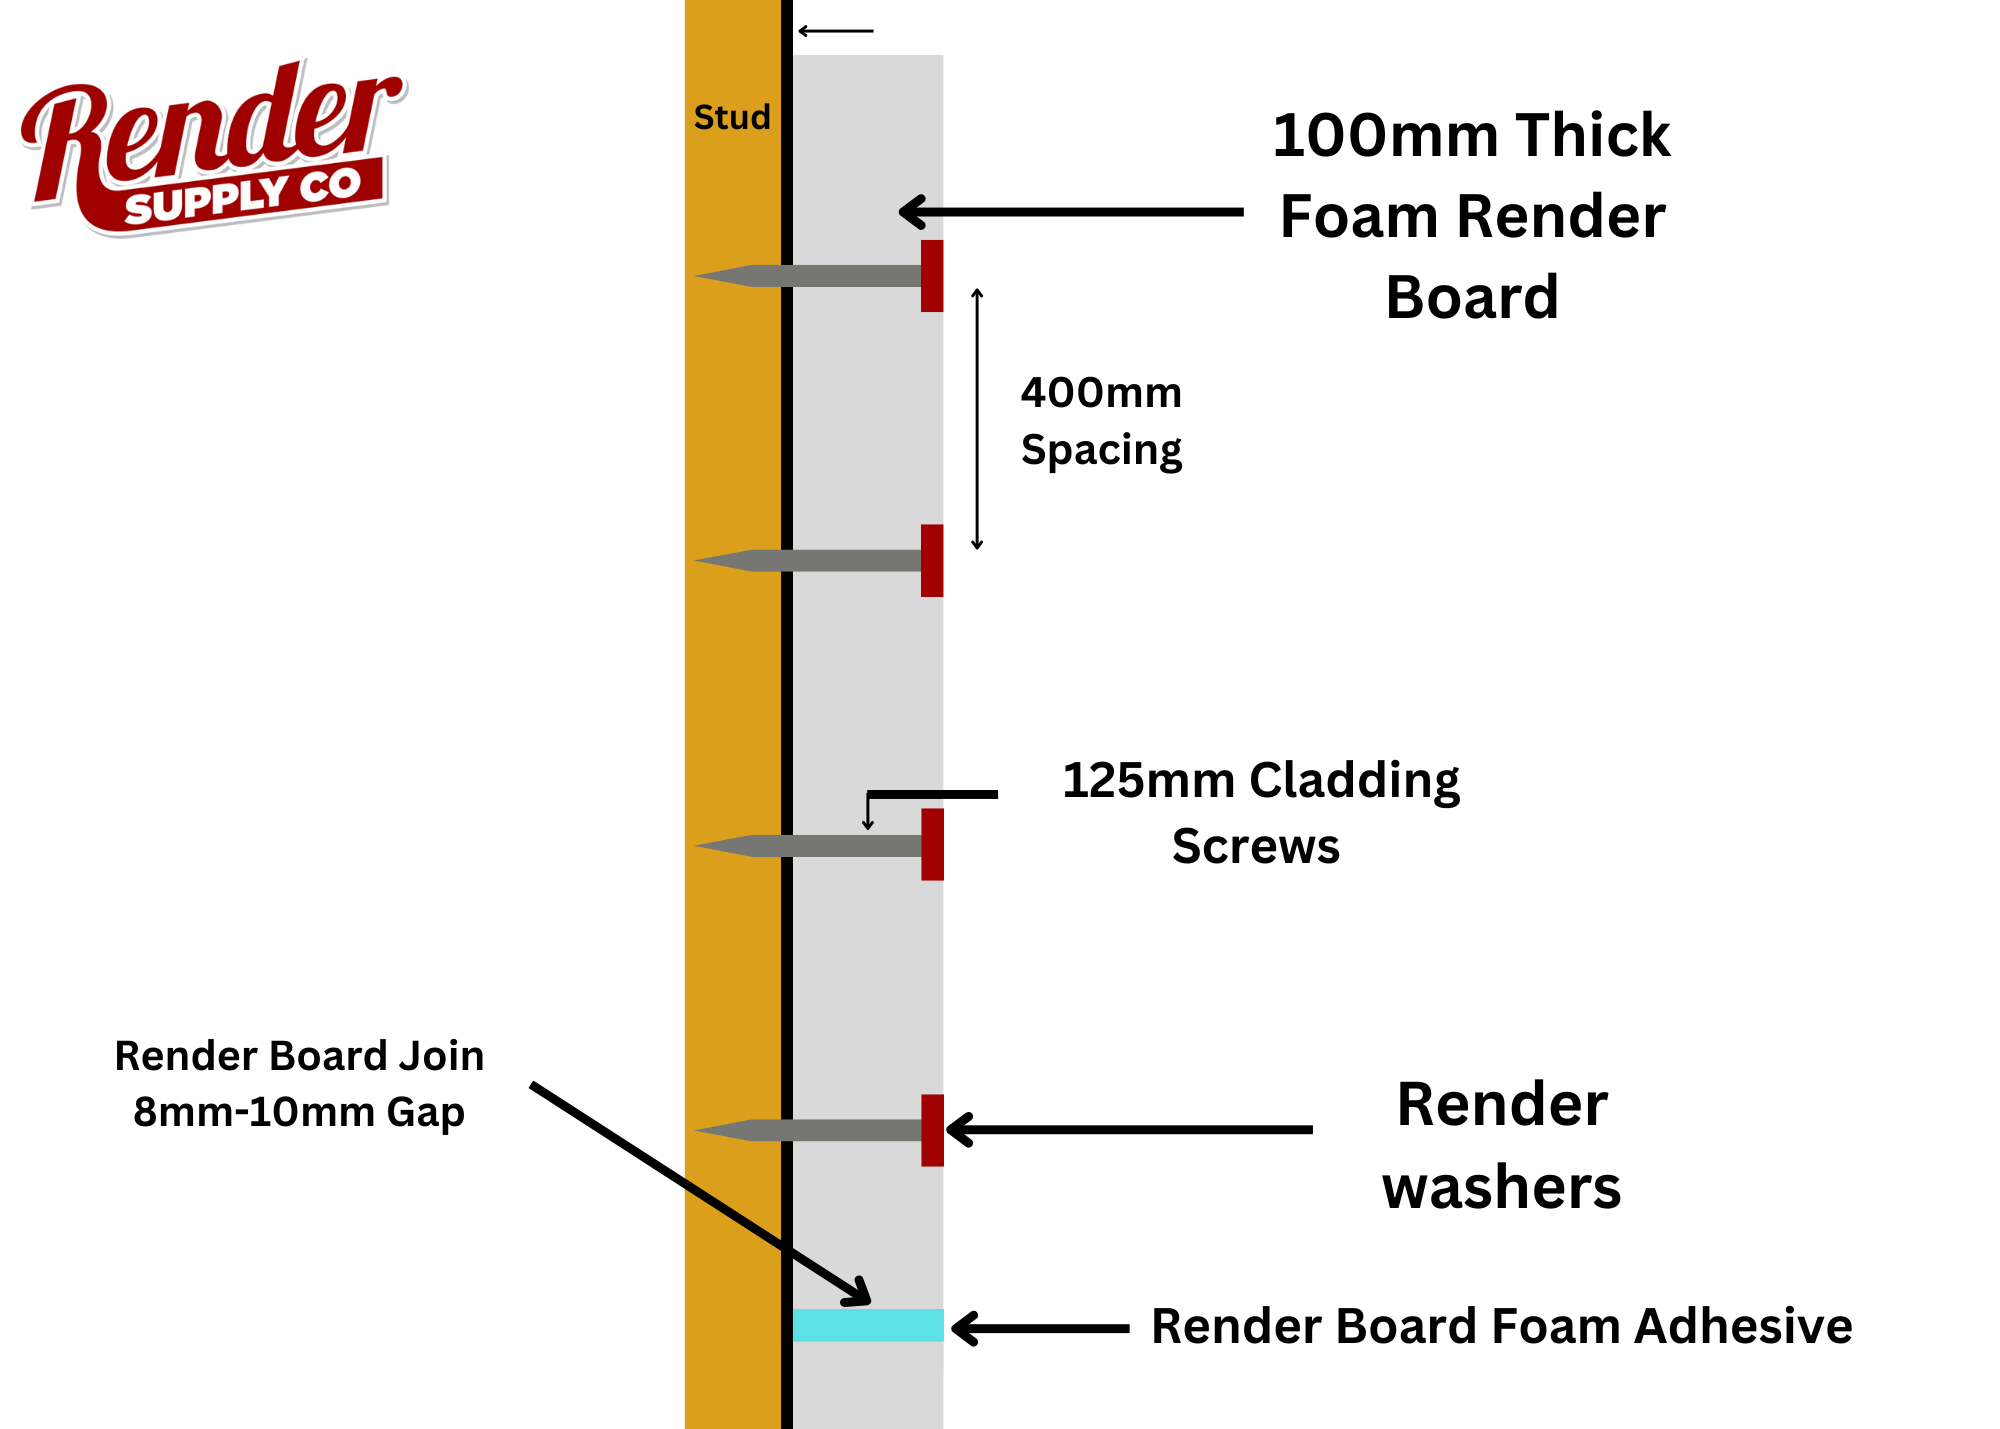 Render Board Screws 125mm